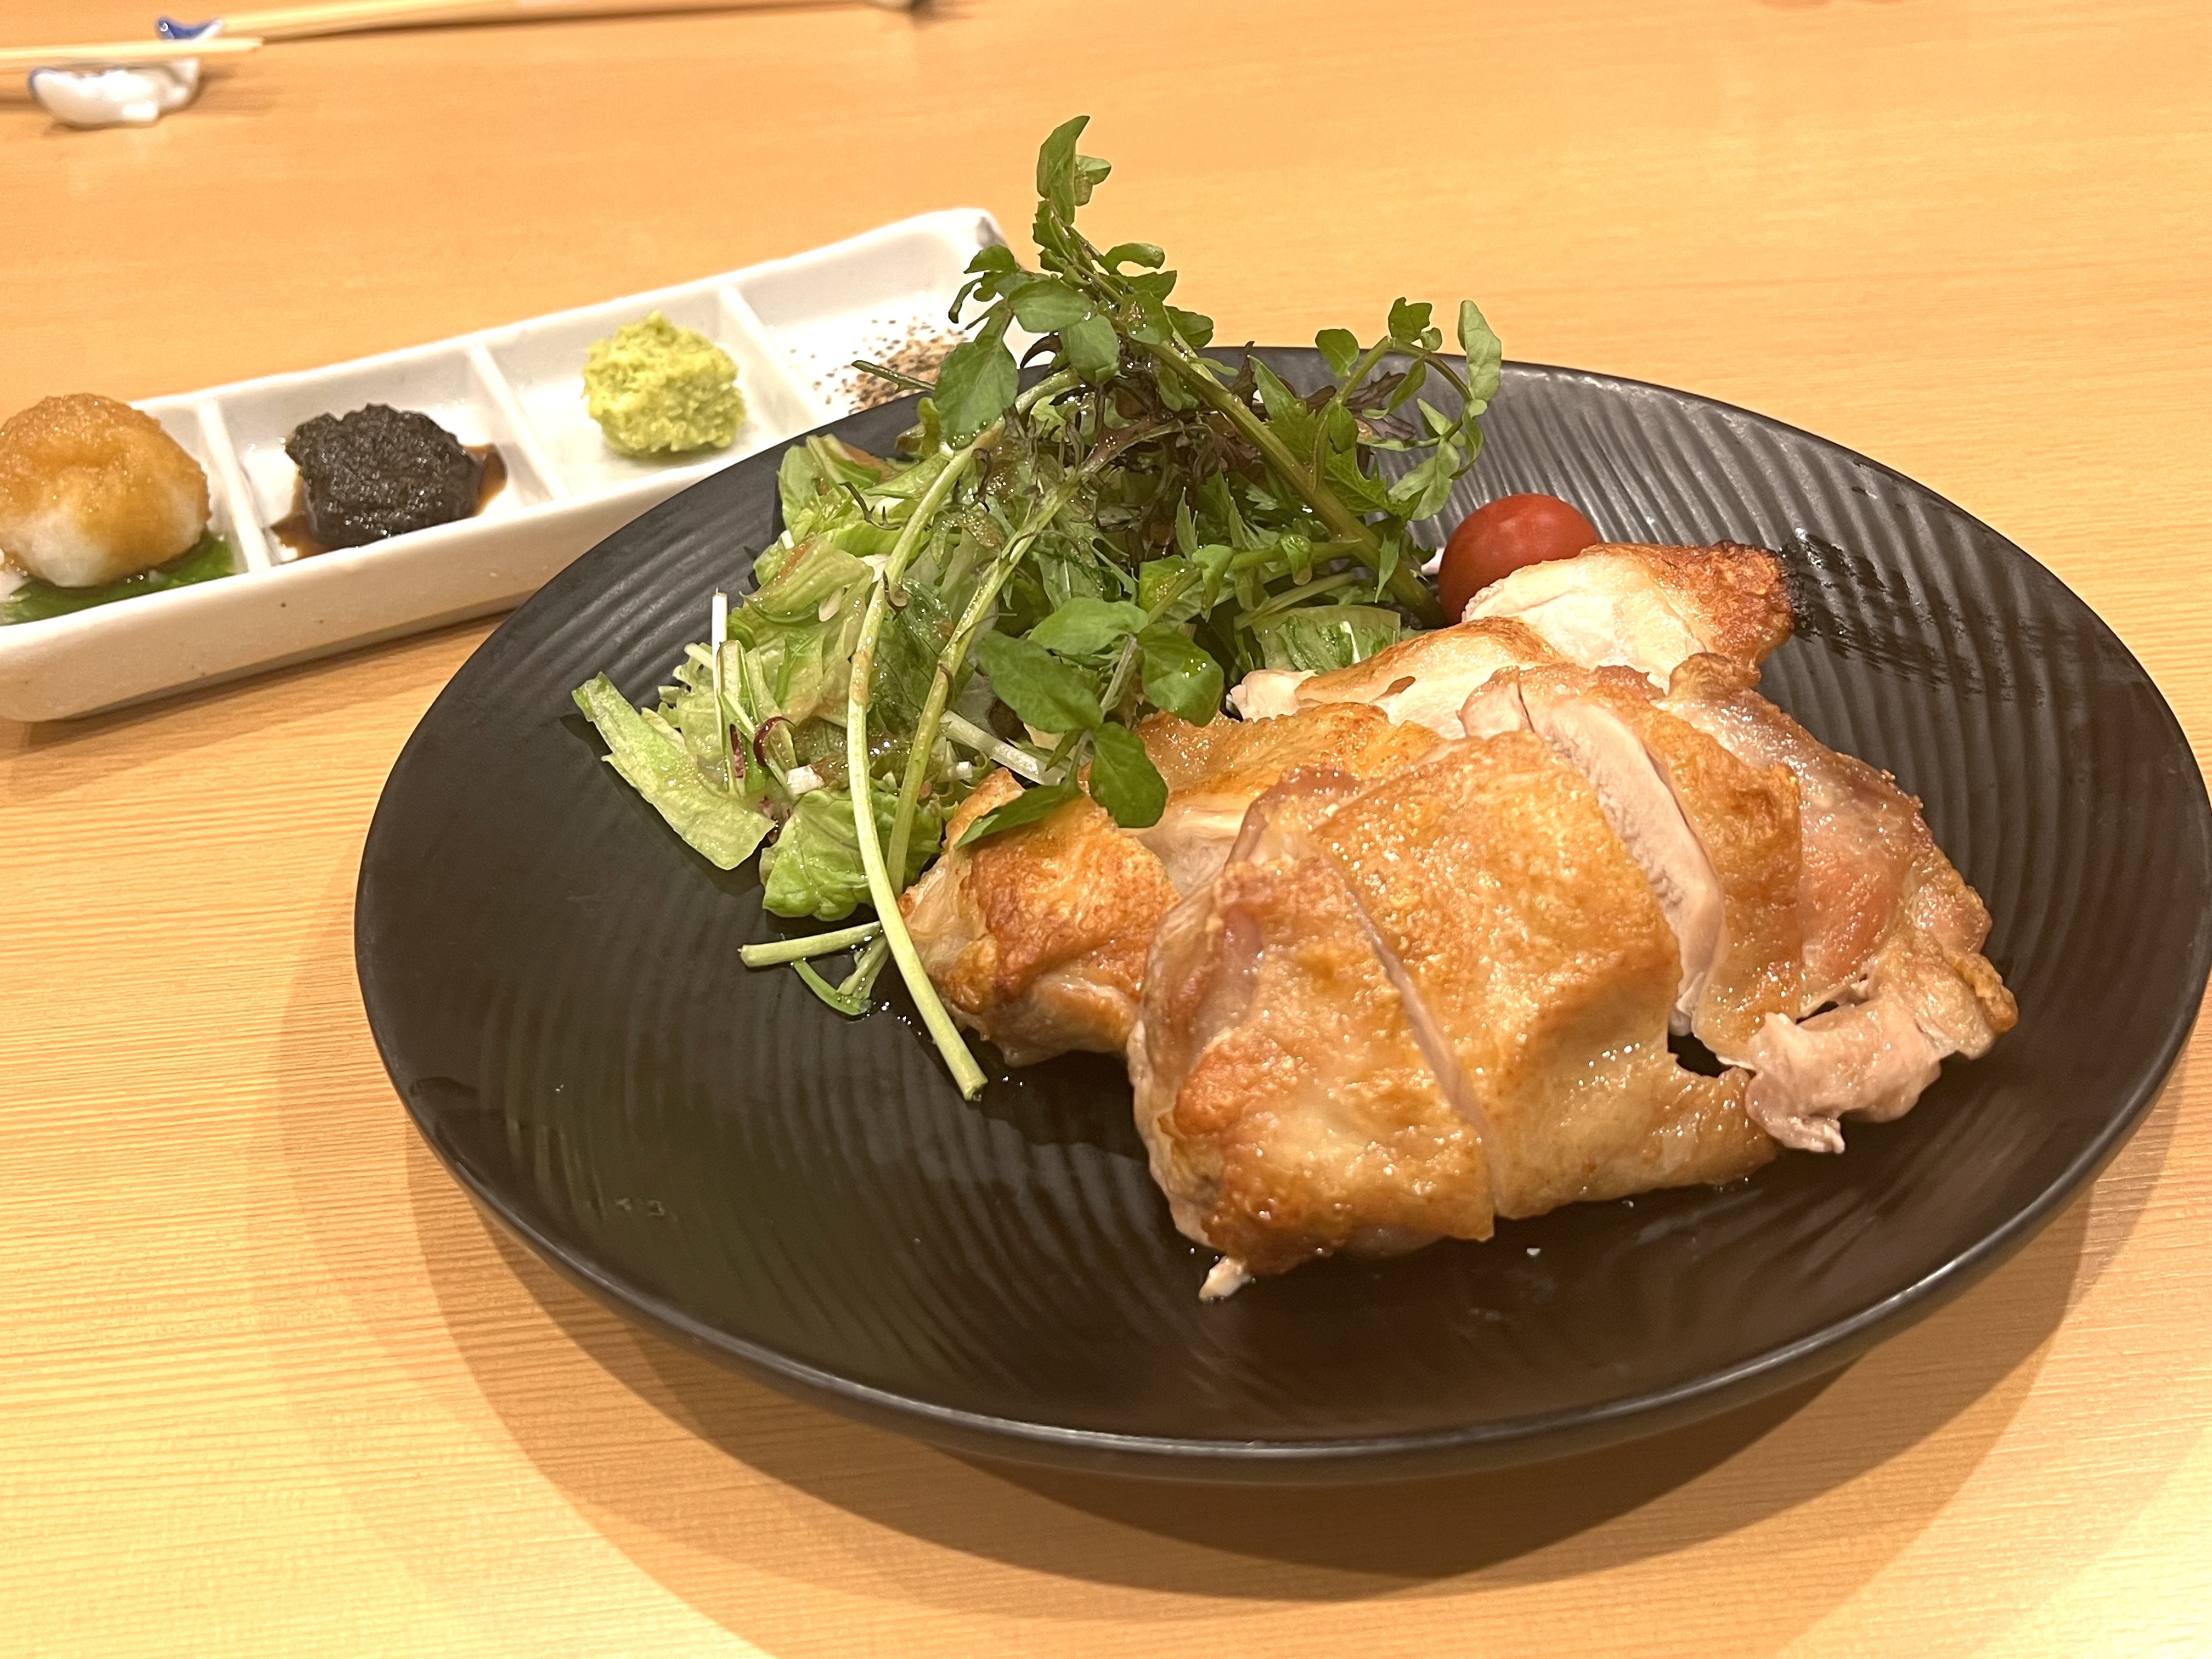 【大阪梅田】レストランがリニューアルオープン本格フレンチのランチビュッフェをリーズナブルな価格で♪Brasserie La Logeのランチビュッフェ